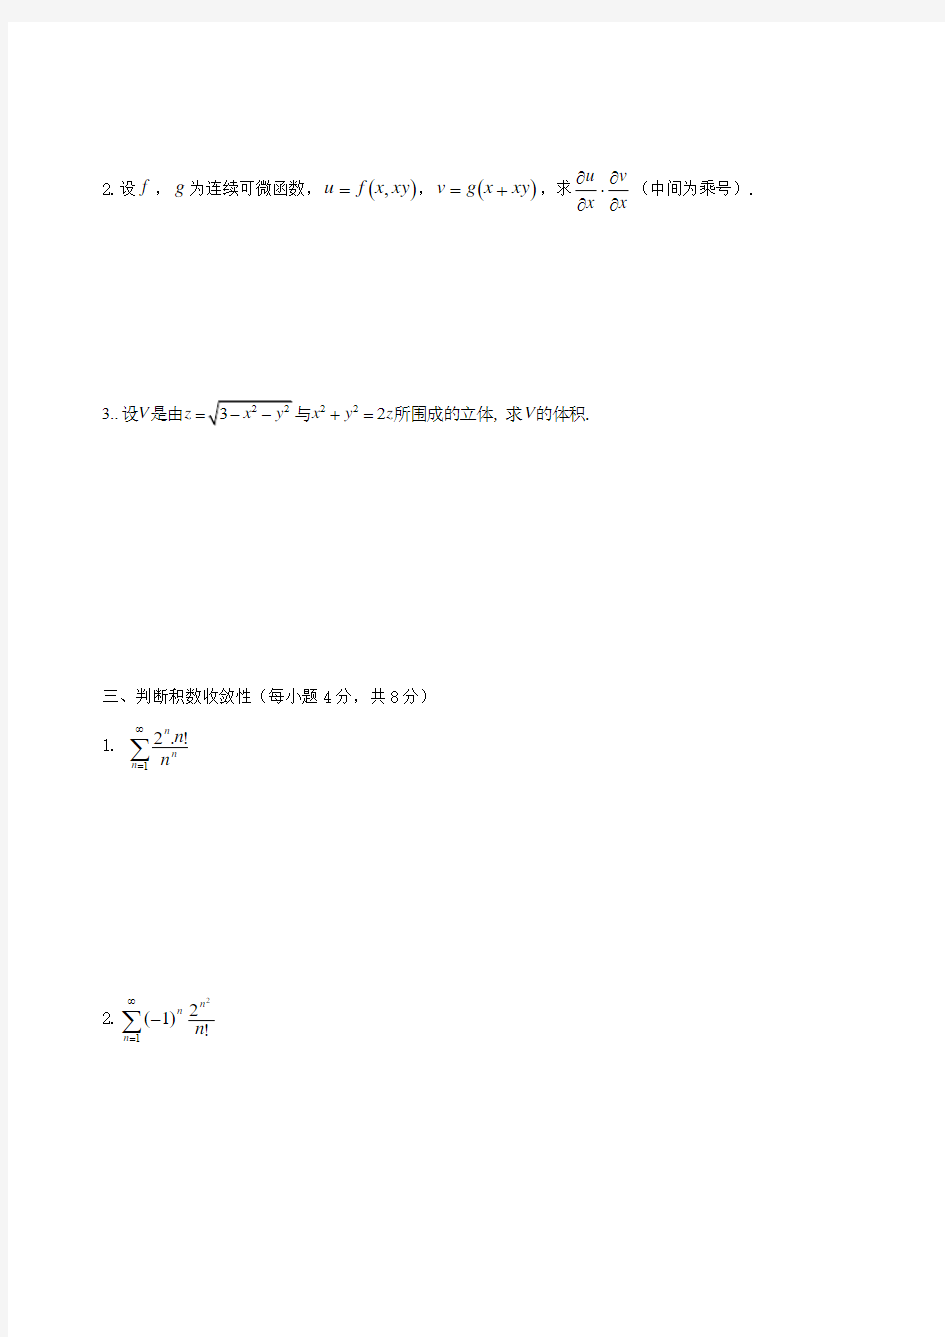 工科数学分析(下)考试题(带答案)